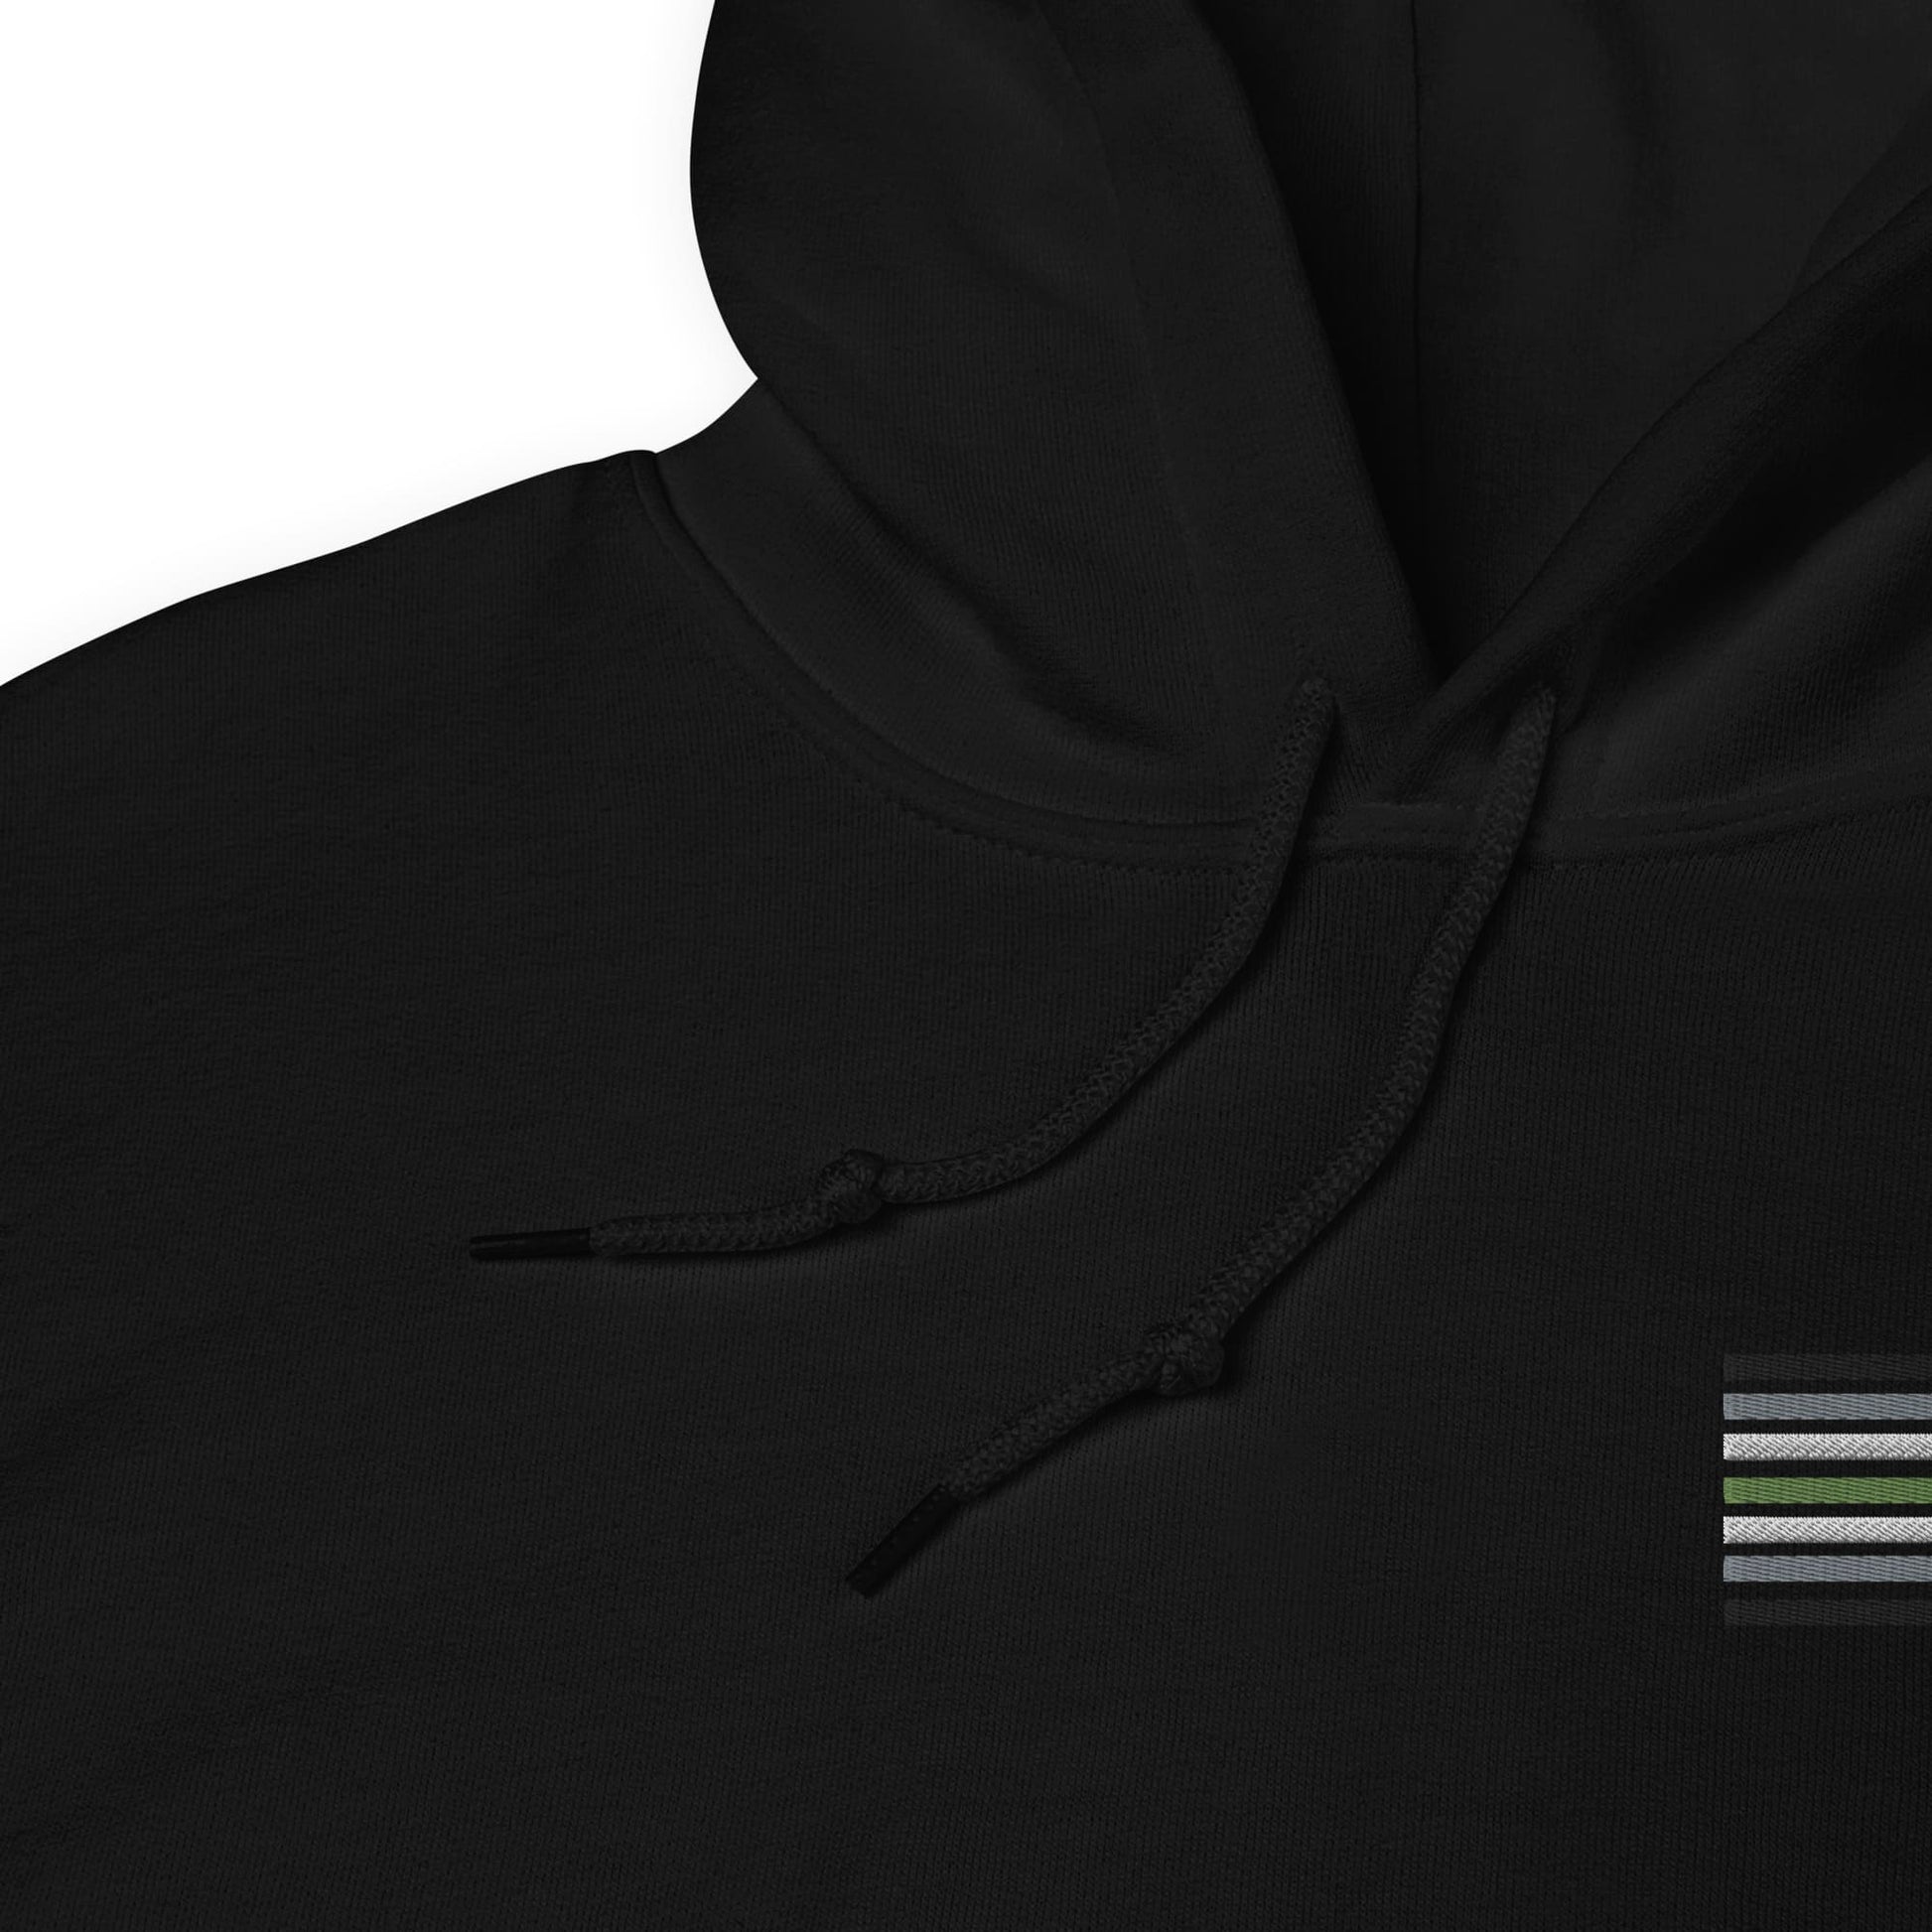 agender hoodie, subtle genderless pride flag embroidered pocket design hooded sweatshirt, detail strings